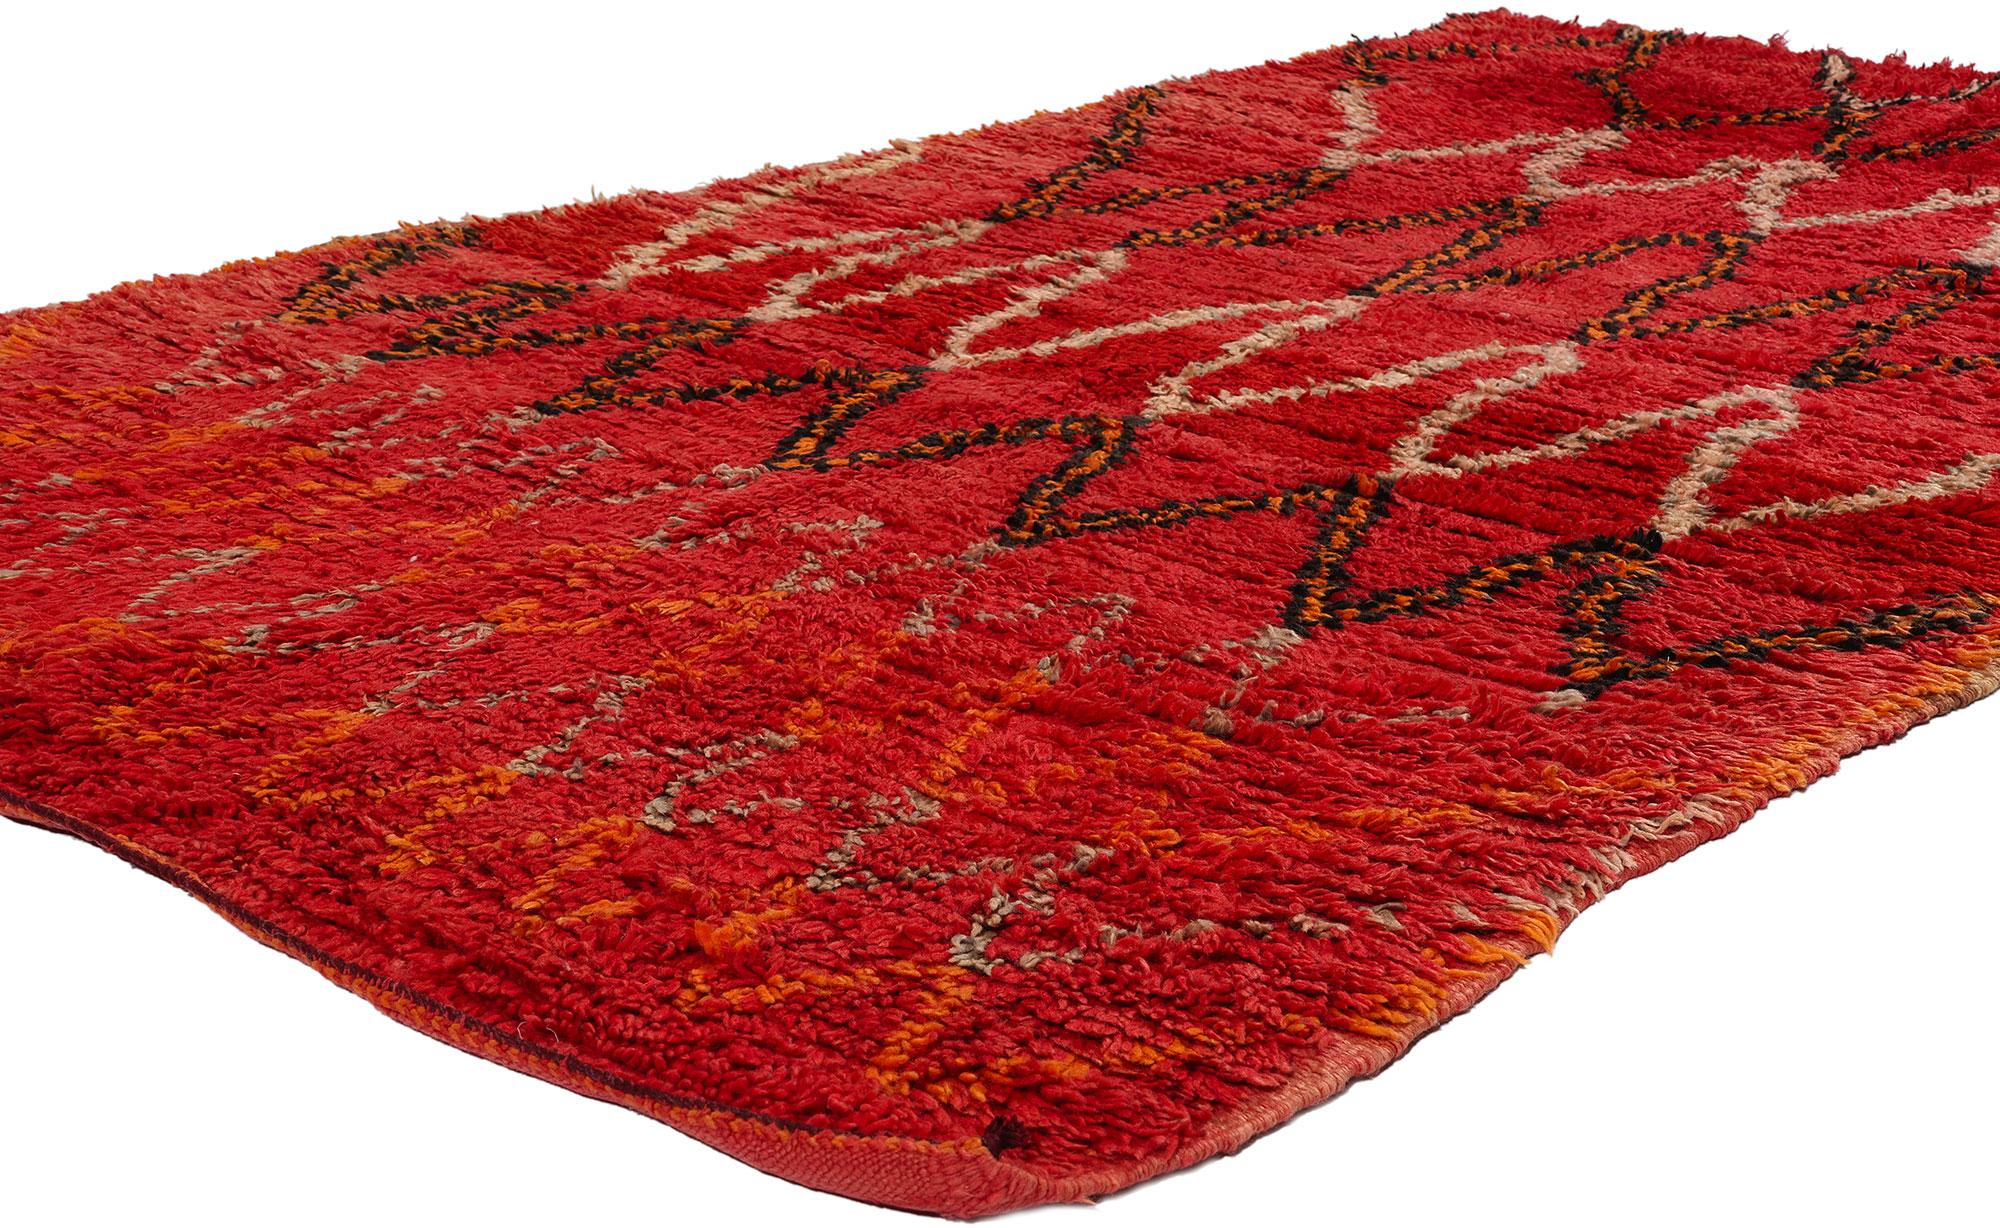 21758 Tapis marocain Vintage Red Talsint, 04'07 x 07'09. Découvrez le savoir-faire captivant de ce tapis marocain Talsint rouge vintage en laine nouée à la main, provenant de la région de Figuig au nord-est du Maroc, également connue sous le nom